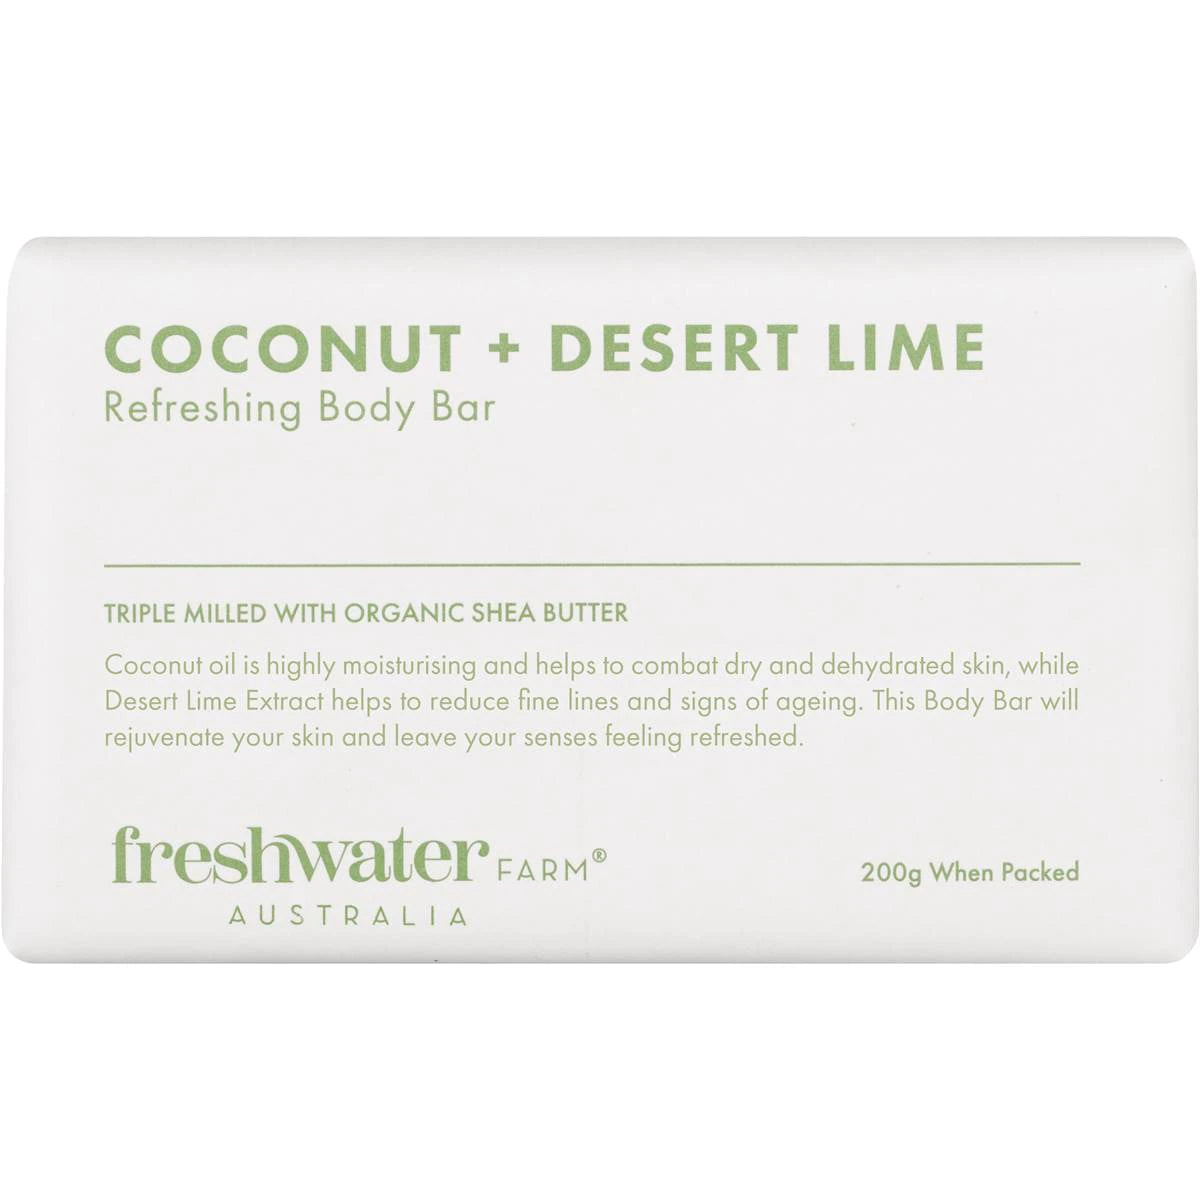 Freshwater Farm Australia Triple Milled Coconut + Desert Lime Body Bar Soap